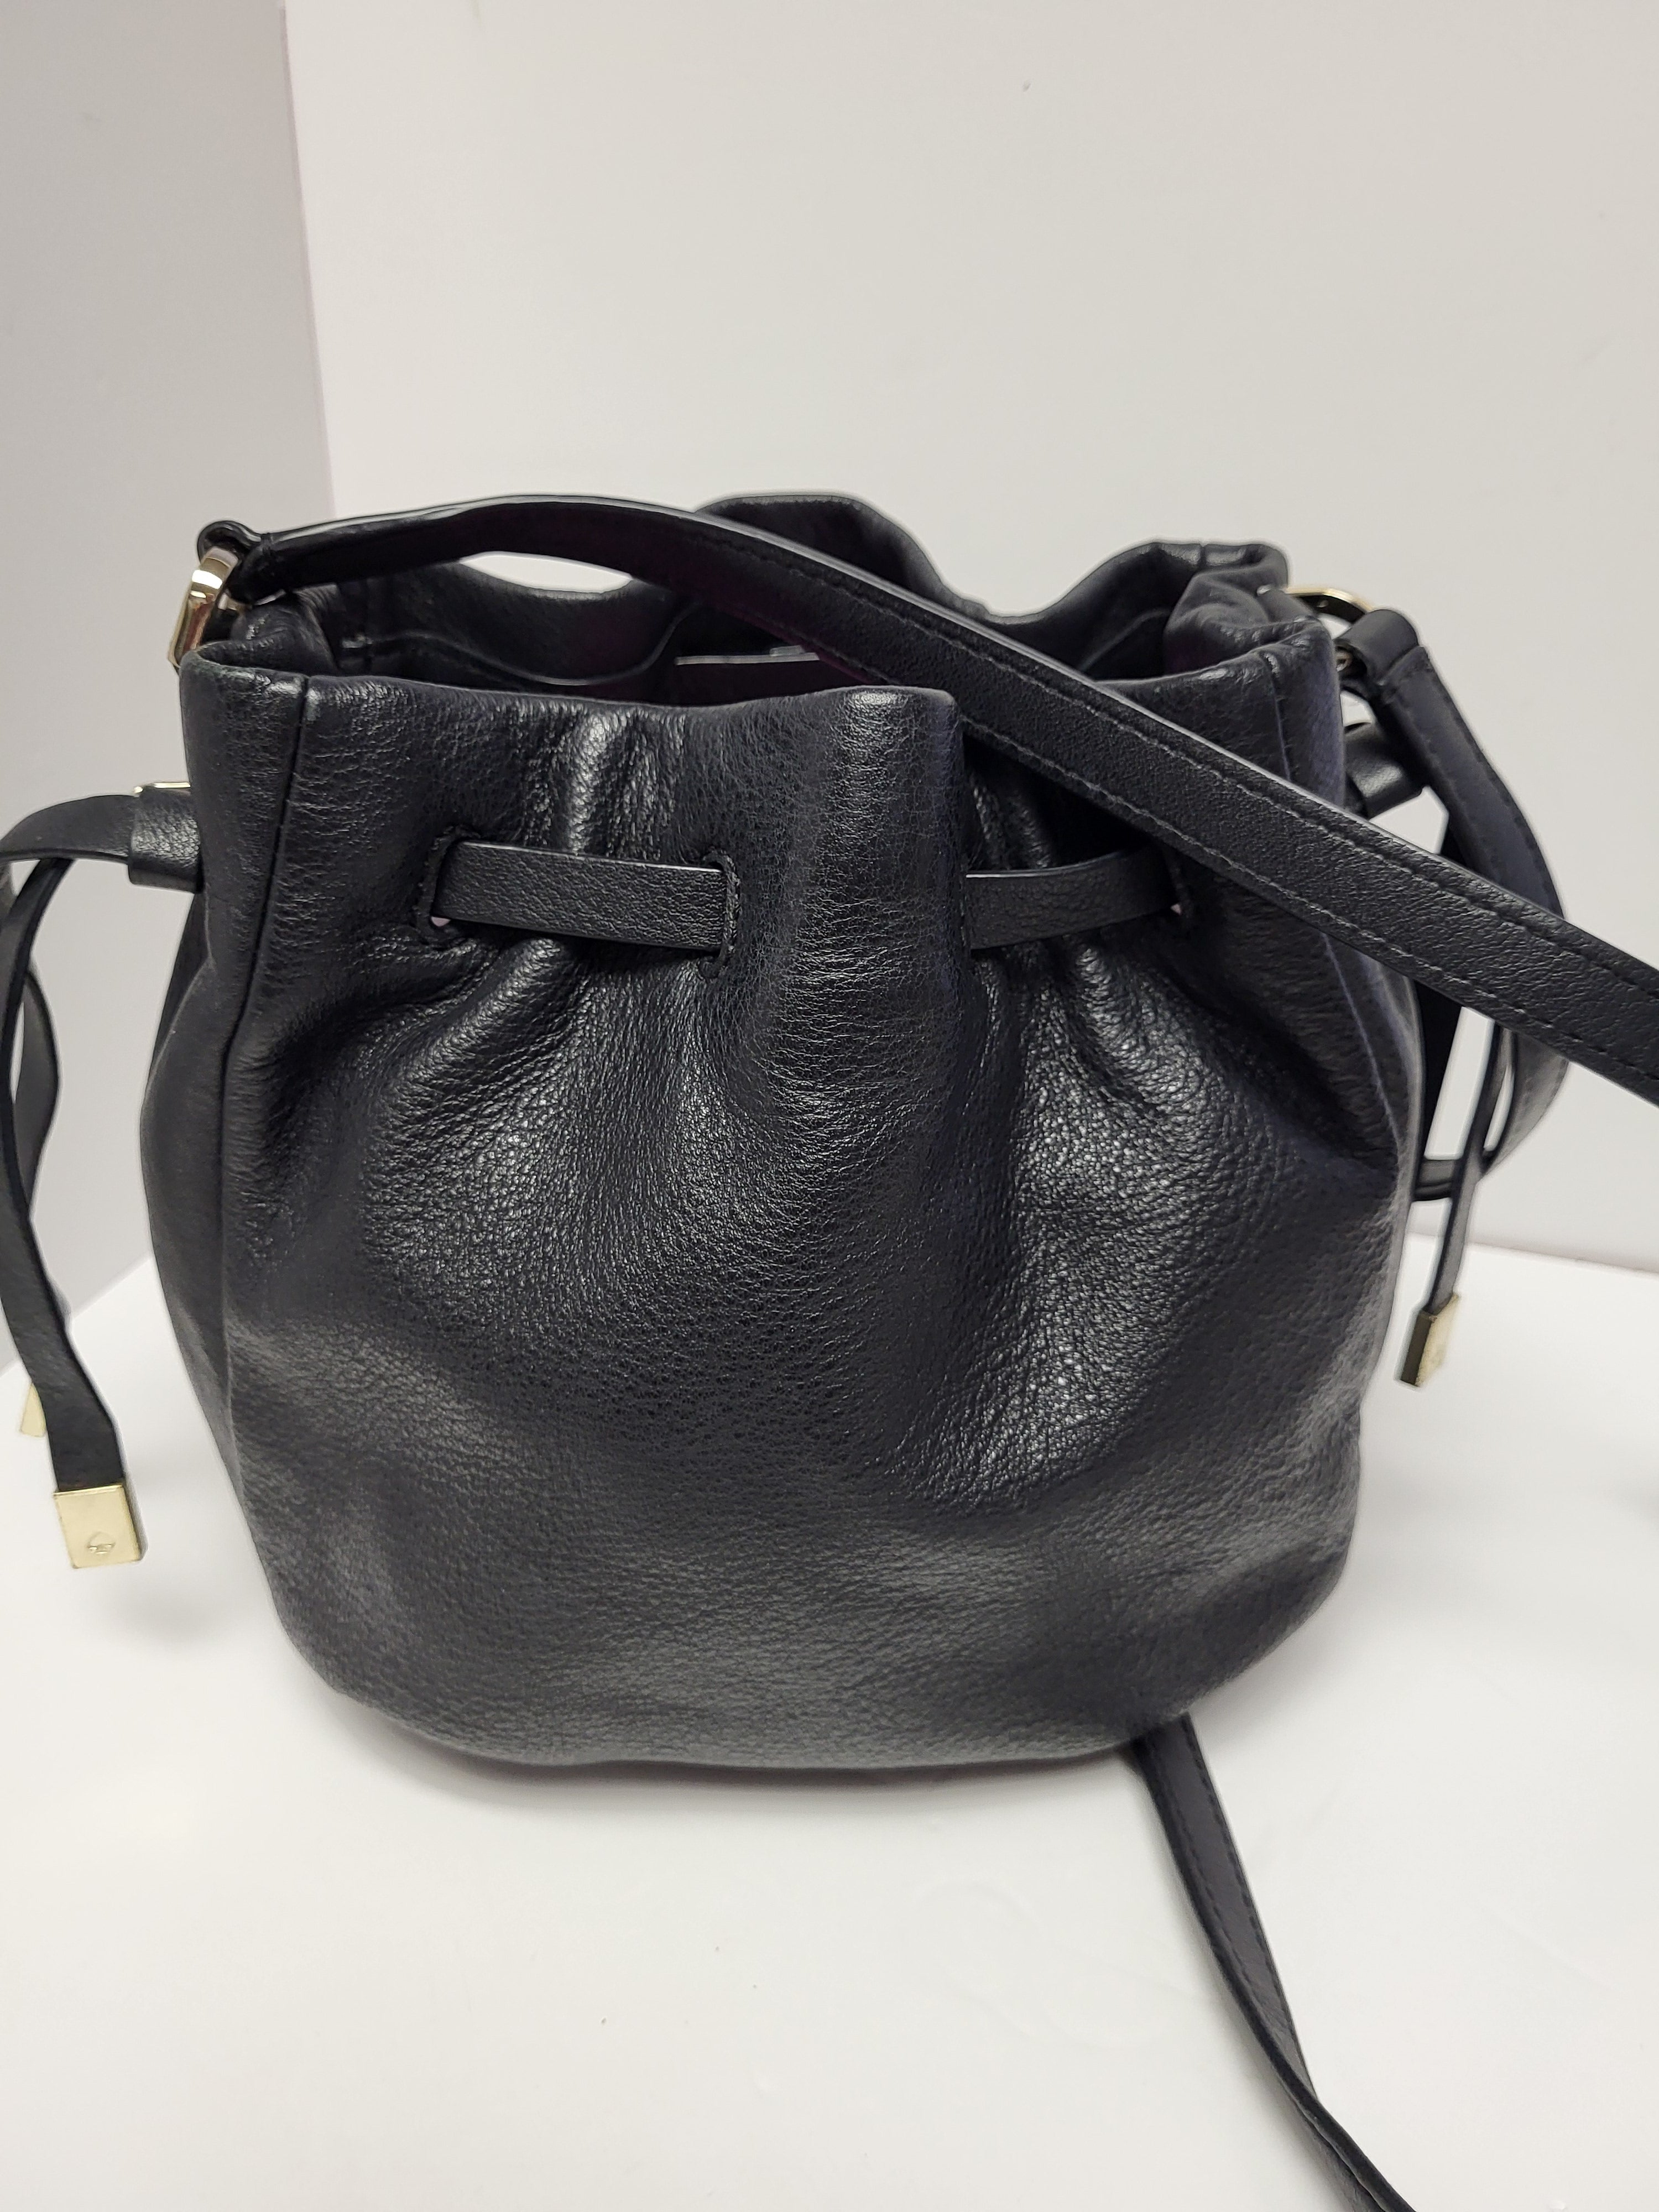 Kate Spade Black Leather Crossbody/Shoulder Bag